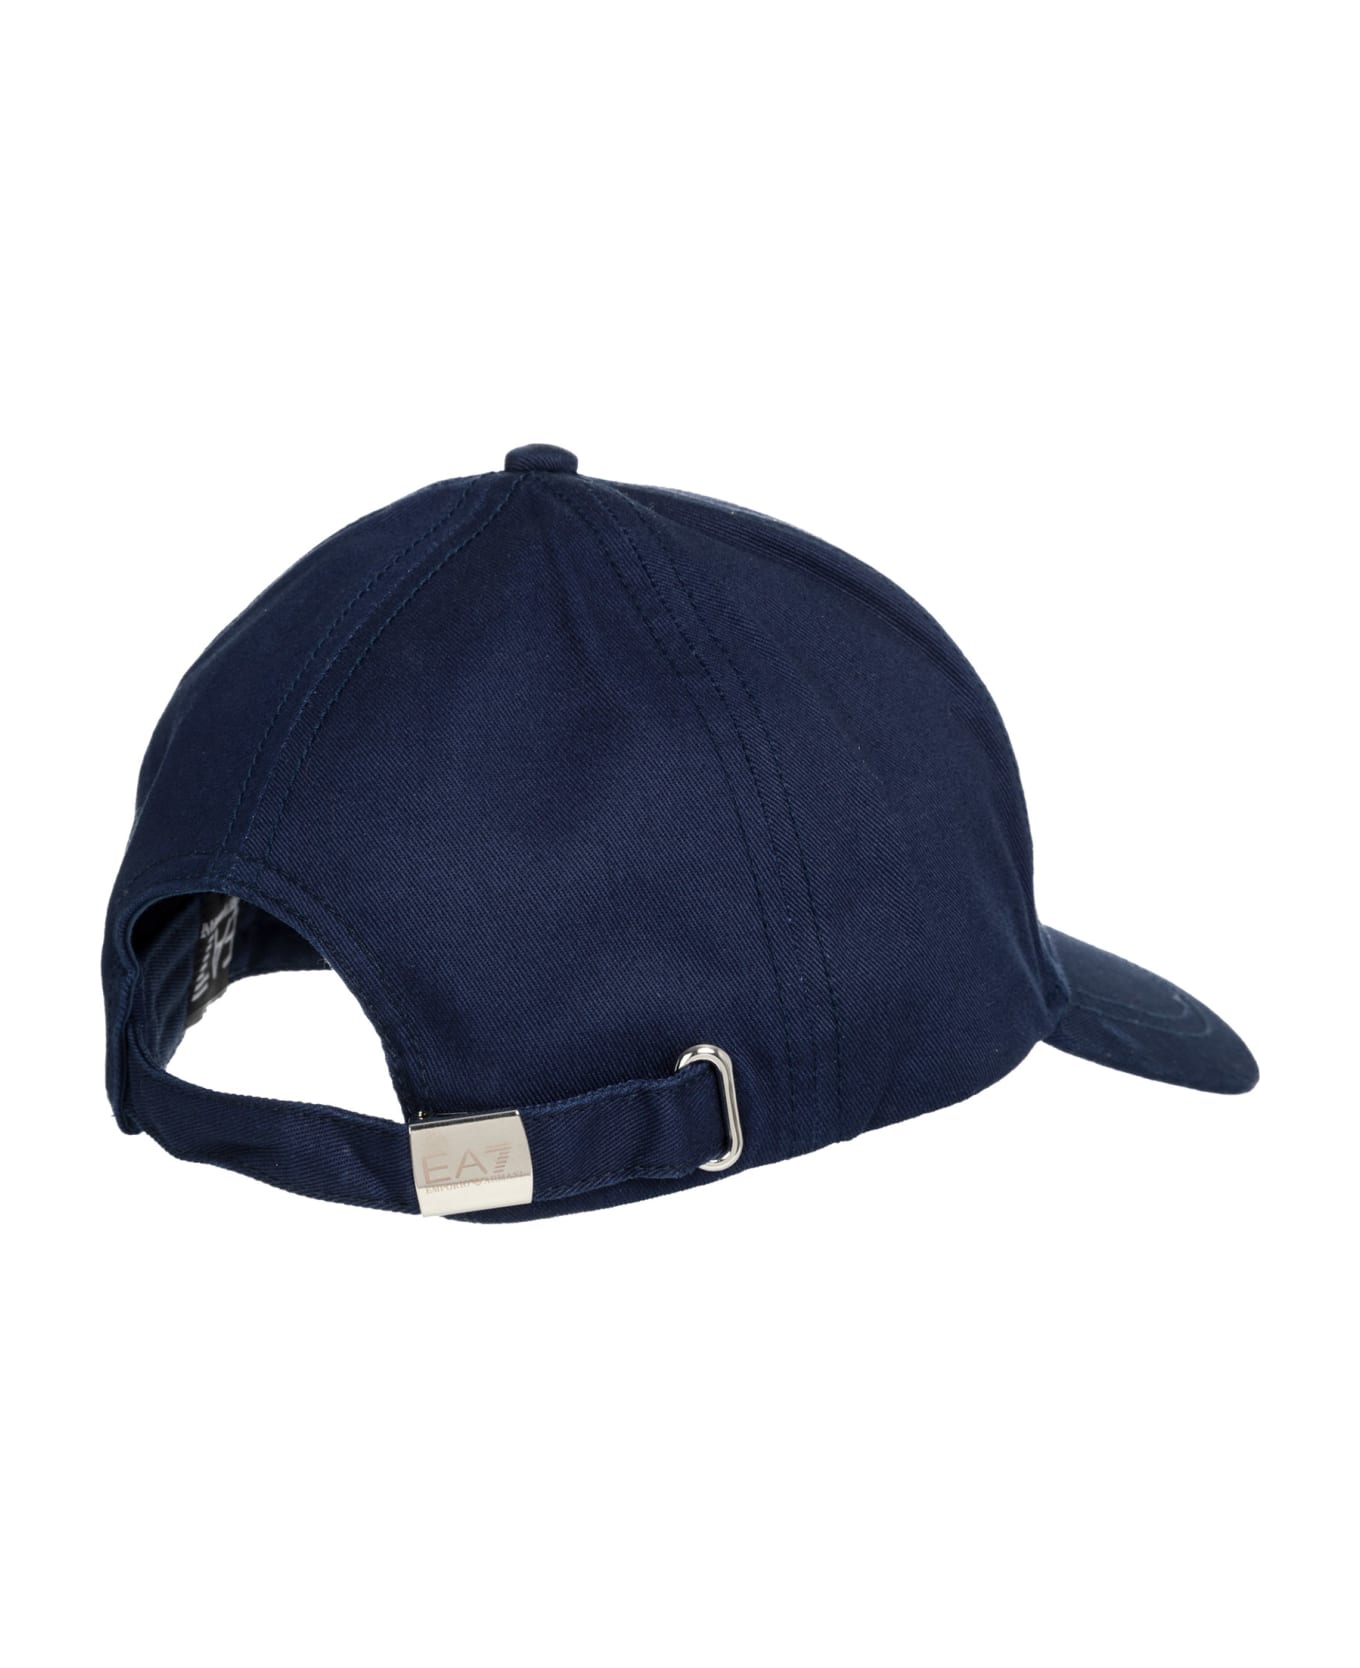 EA7 Cotton Hat